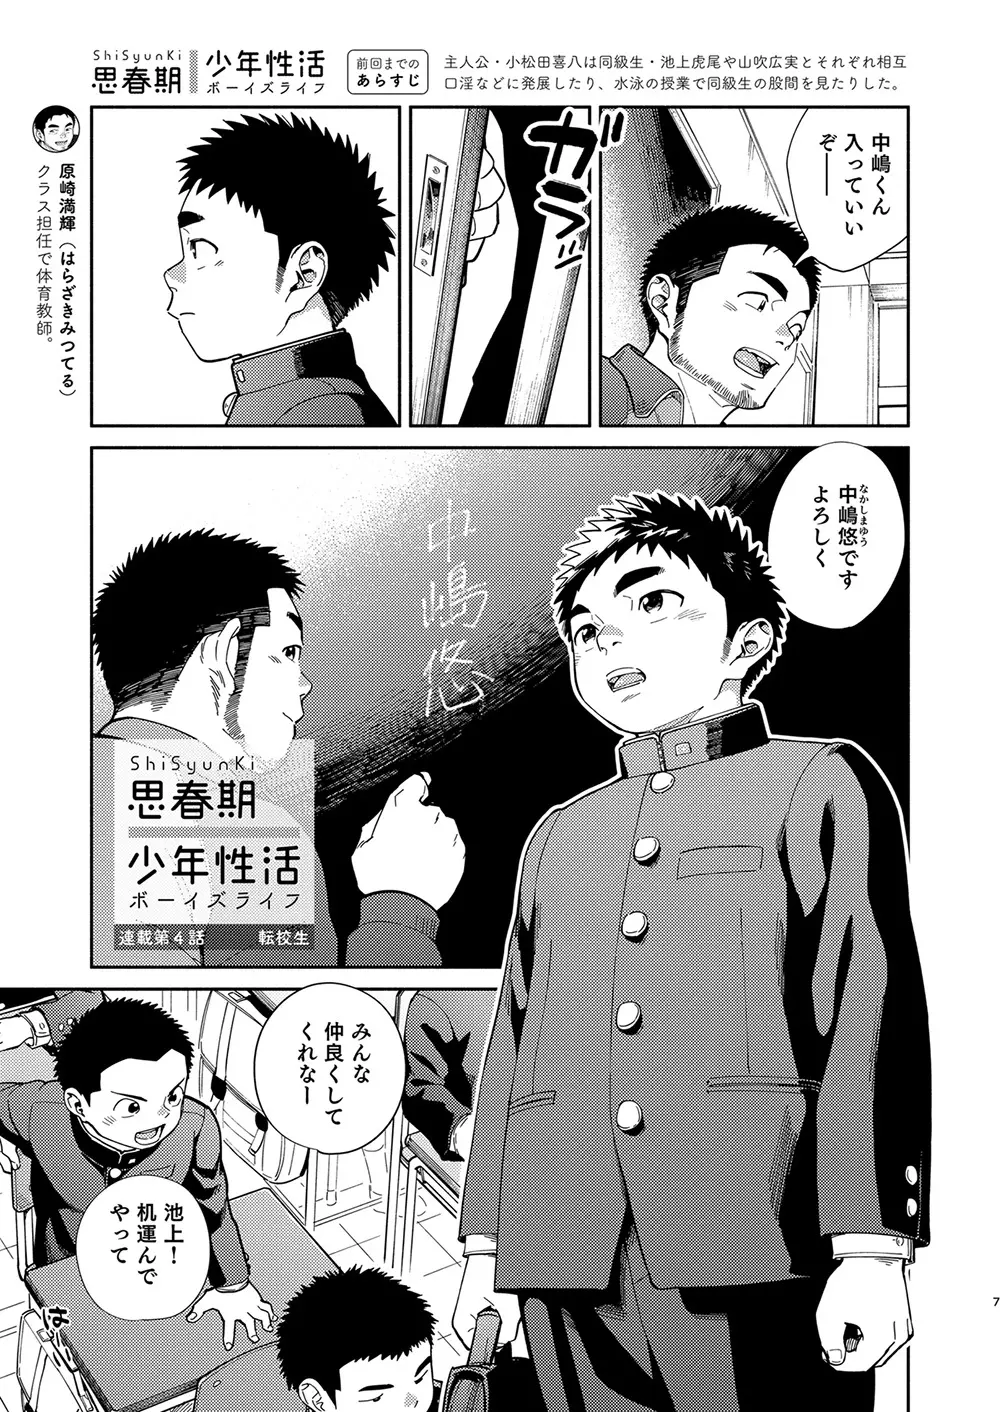 漫画少年ズーム vol.31 - page7